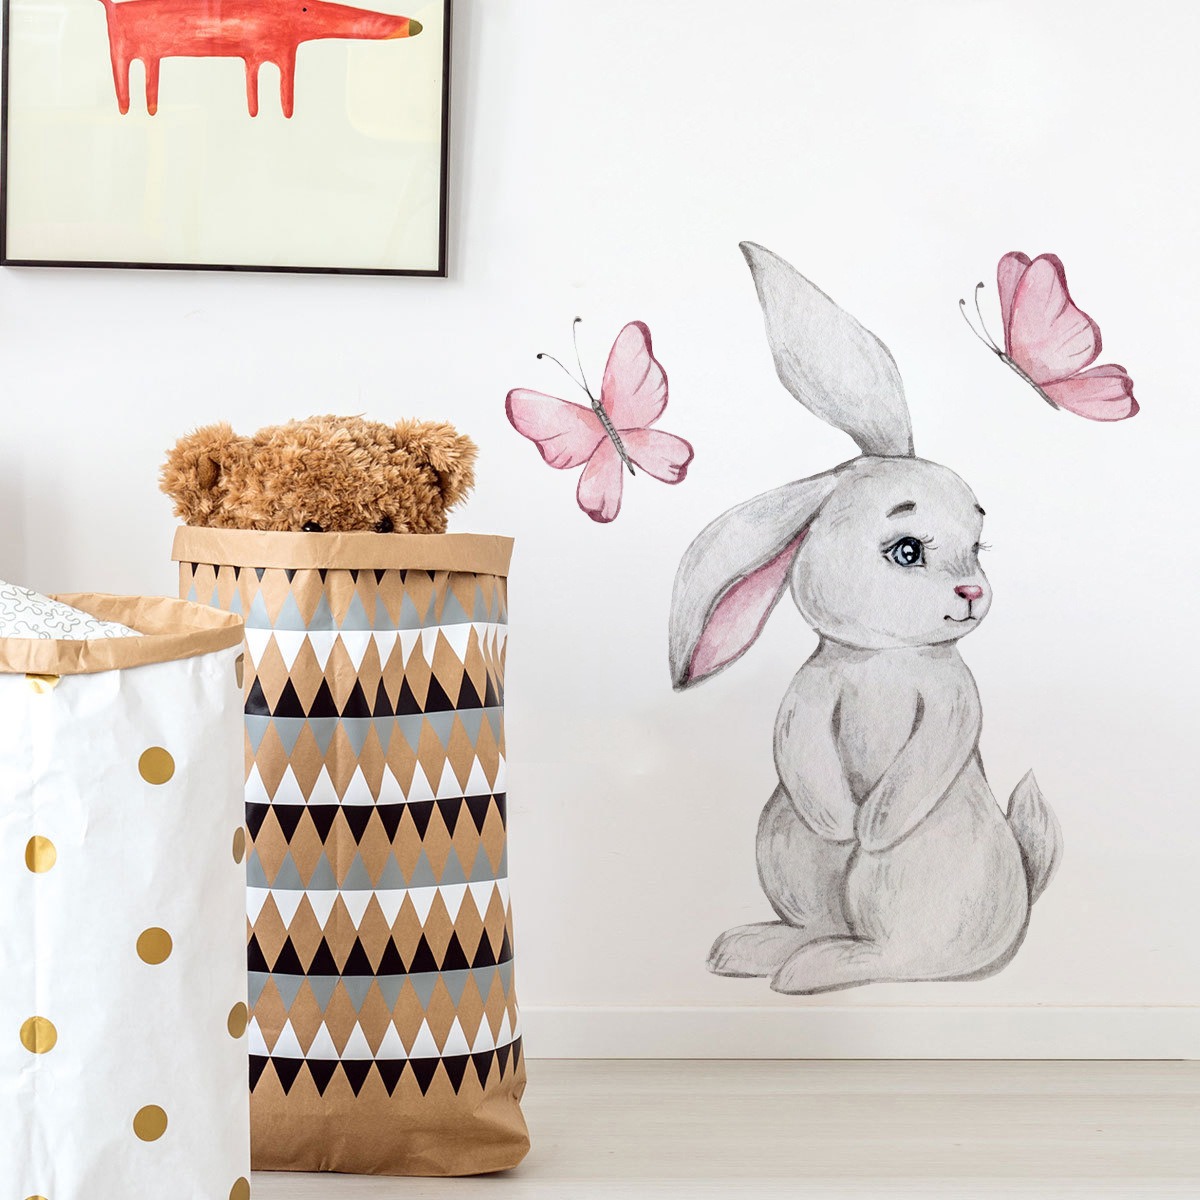 新款AD3248卡通兔子蝴蝶墙贴儿童房宝宝卧室家居墙面装饰贴纸自粘